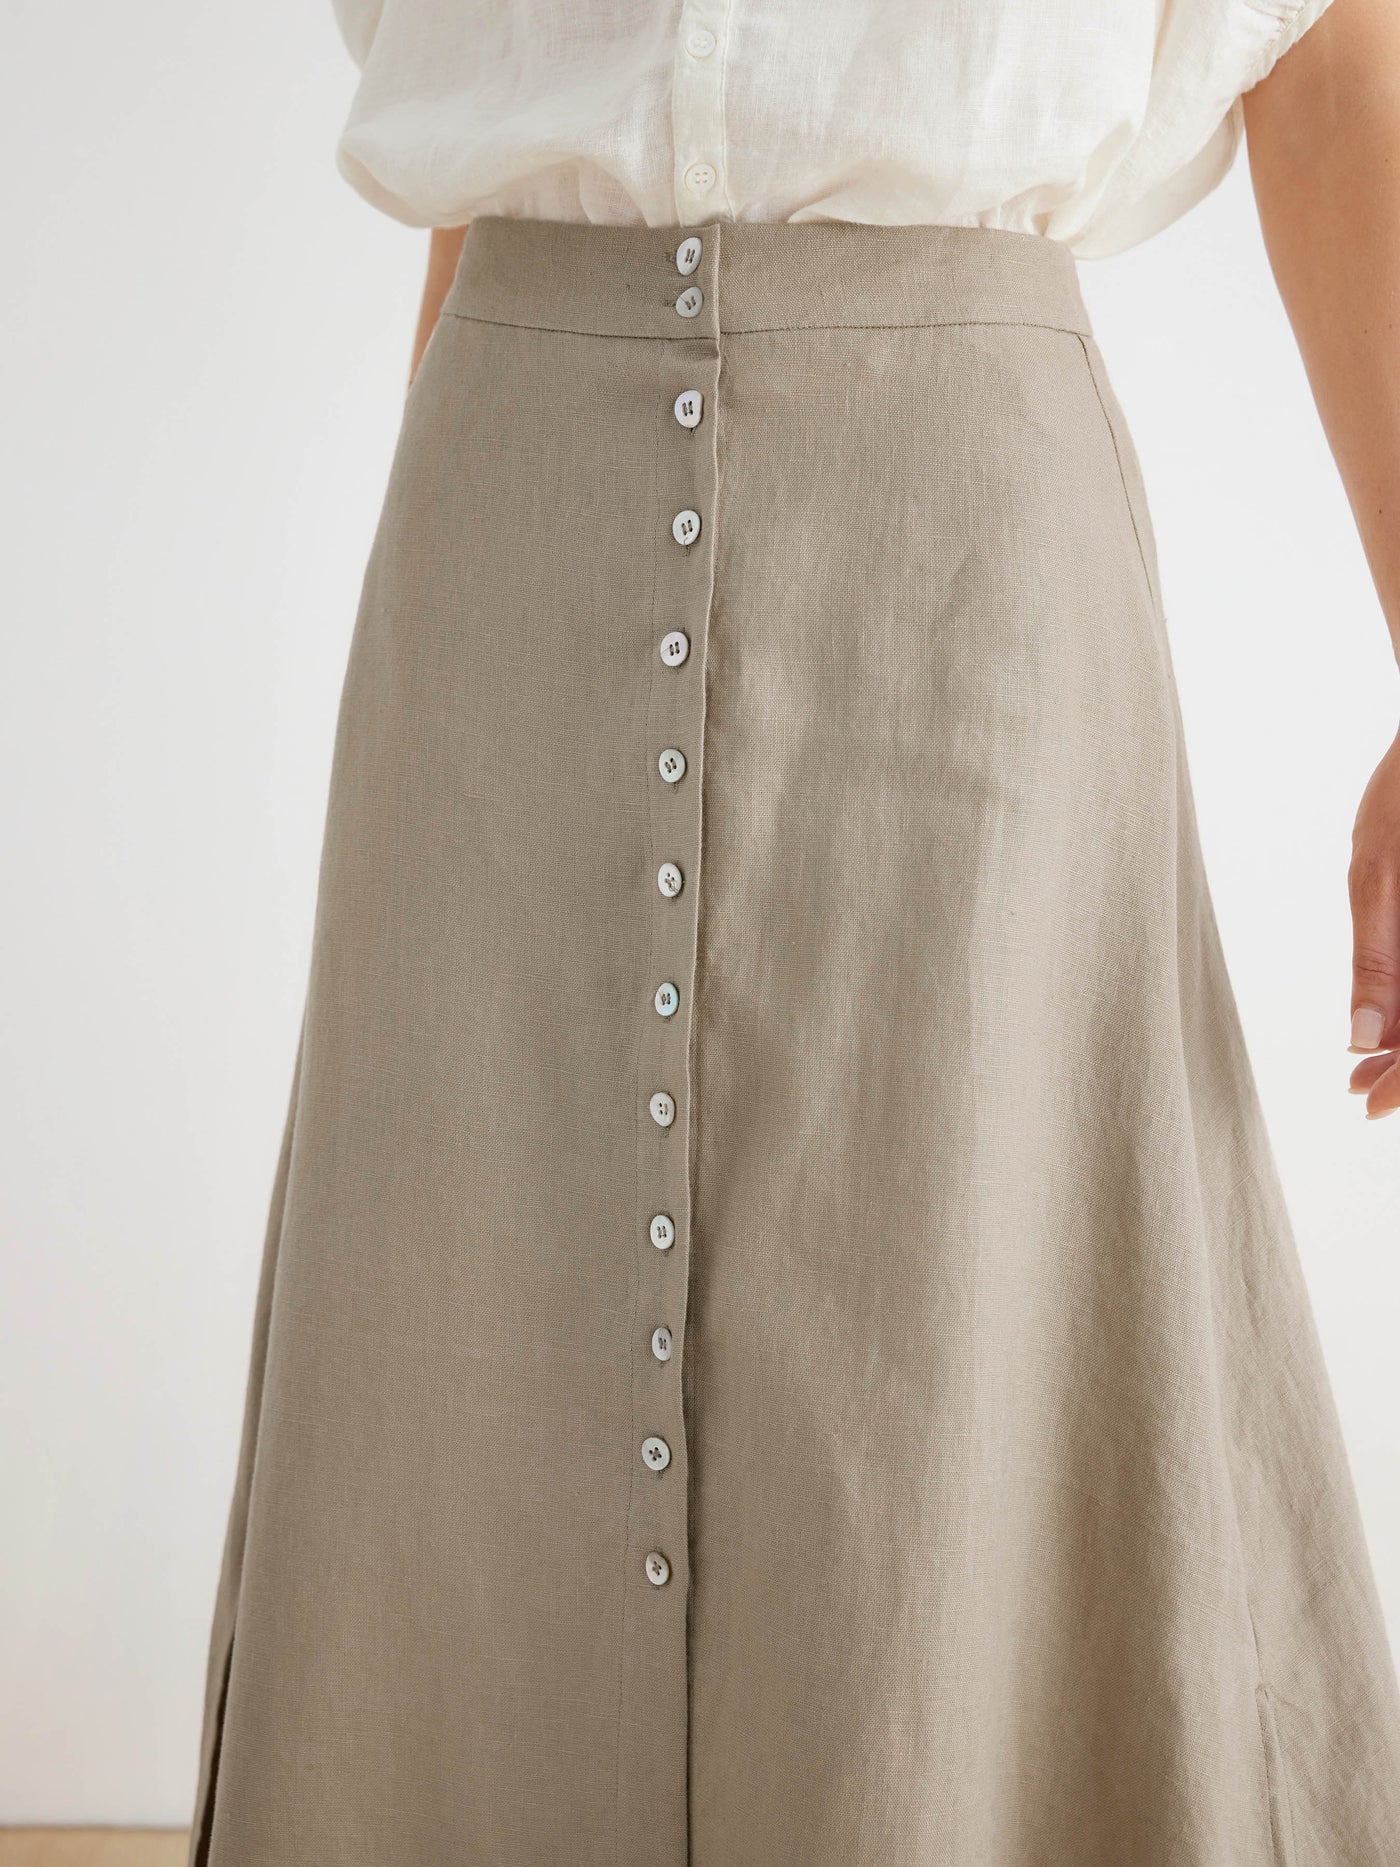 Kaia 100% Linen Button Up A-Line Long Skirt